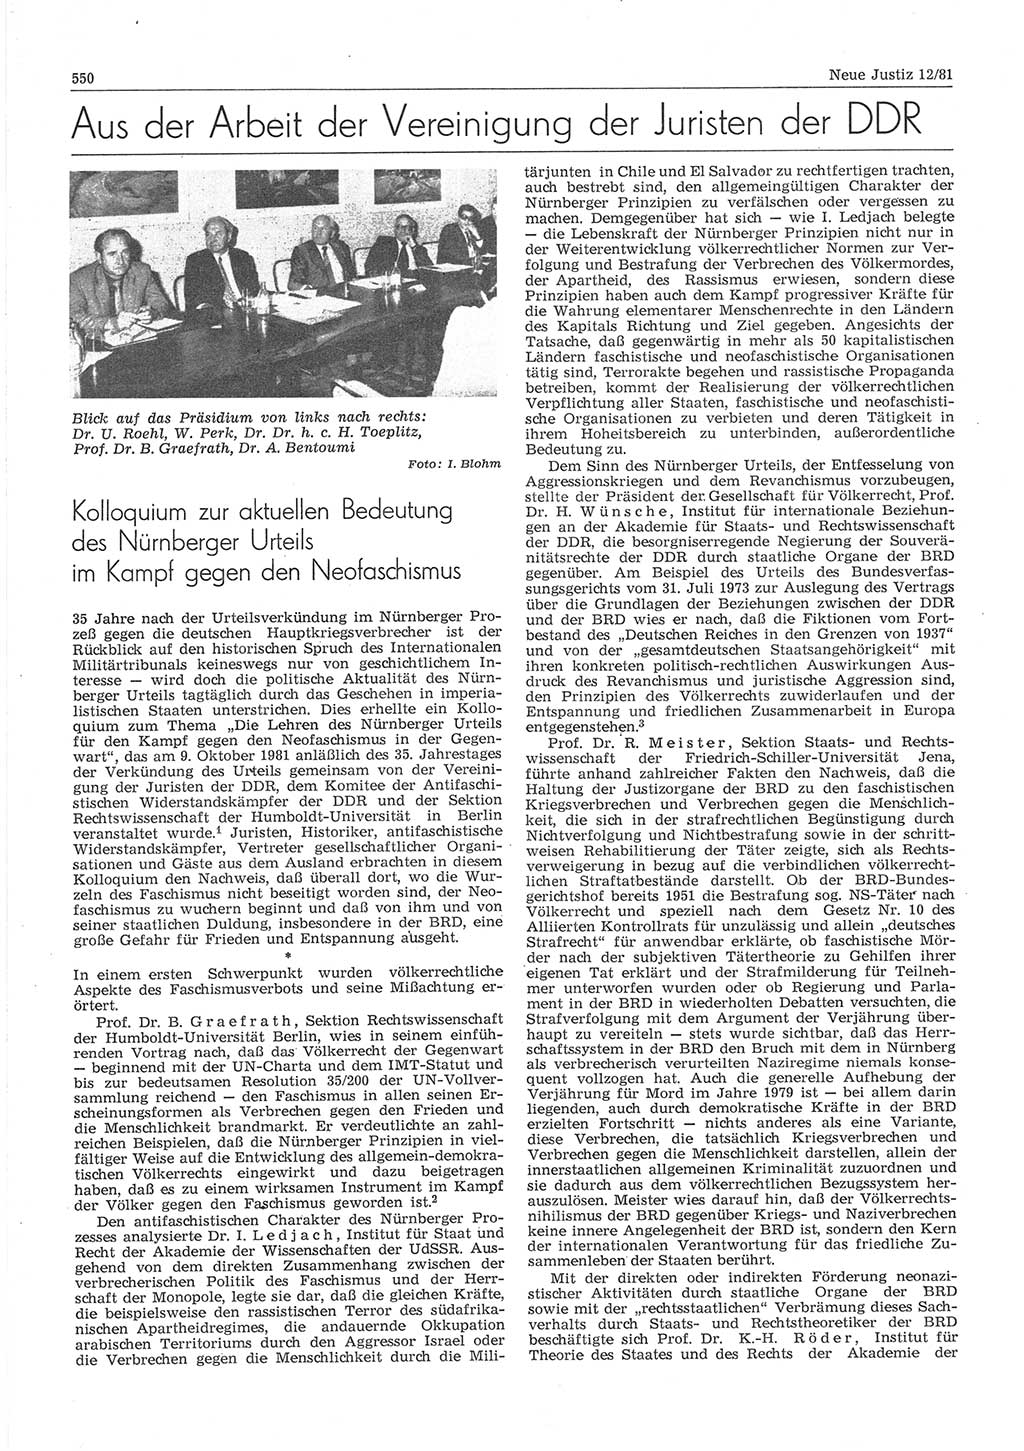 Neue Justiz (NJ), Zeitschrift für sozialistisches Recht und Gesetzlichkeit [Deutsche Demokratische Republik (DDR)], 35. Jahrgang 1981, Seite 550 (NJ DDR 1981, S. 550)